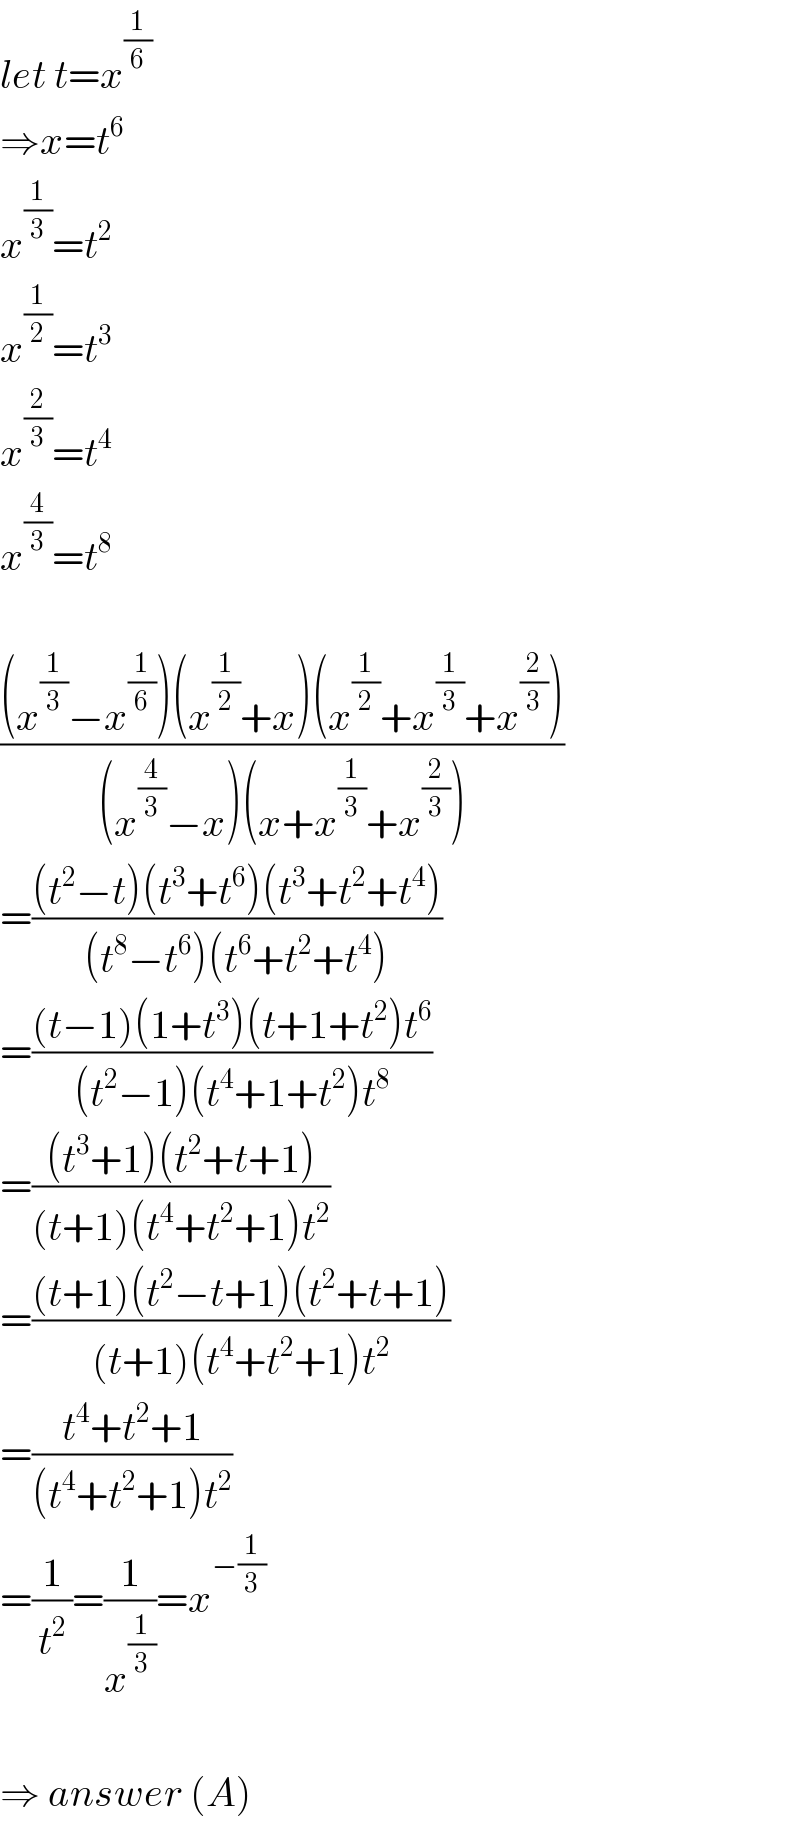 let t=x^(1/6)   ⇒x=t^6   x^(1/3) =t^2   x^(1/2) =t^3   x^(2/3) =t^4   x^(4/3) =t^8     (((x^(1/3) −x^(1/6) )(x^(1/2) +x)(x^(1/2) +x^(1/3) +x^(2/3) ))/((x^(4/3) −x)(x+x^(1/3) +x^(2/3) )))  =(((t^2 −t)(t^3 +t^6 )(t^3 +t^2 +t^4 ))/((t^8 −t^6 )(t^6 +t^2 +t^4 )))  =(((t−1)(1+t^3 )(t+1+t^2 )t^6 )/((t^2 −1)(t^4 +1+t^2 )t^8 ))  =(((t^3 +1)(t^2 +t+1))/((t+1)(t^4 +t^2 +1)t^2 ))  =(((t+1)(t^2 −t+1)(t^2 +t+1))/((t+1)(t^4 +t^2 +1)t^2 ))  =((t^4 +t^2 +1)/((t^4 +t^2 +1)t^2 ))  =(1/t^2 )=(1/x^(1/3) )=x^(−(1/3))     ⇒ answer (A)  